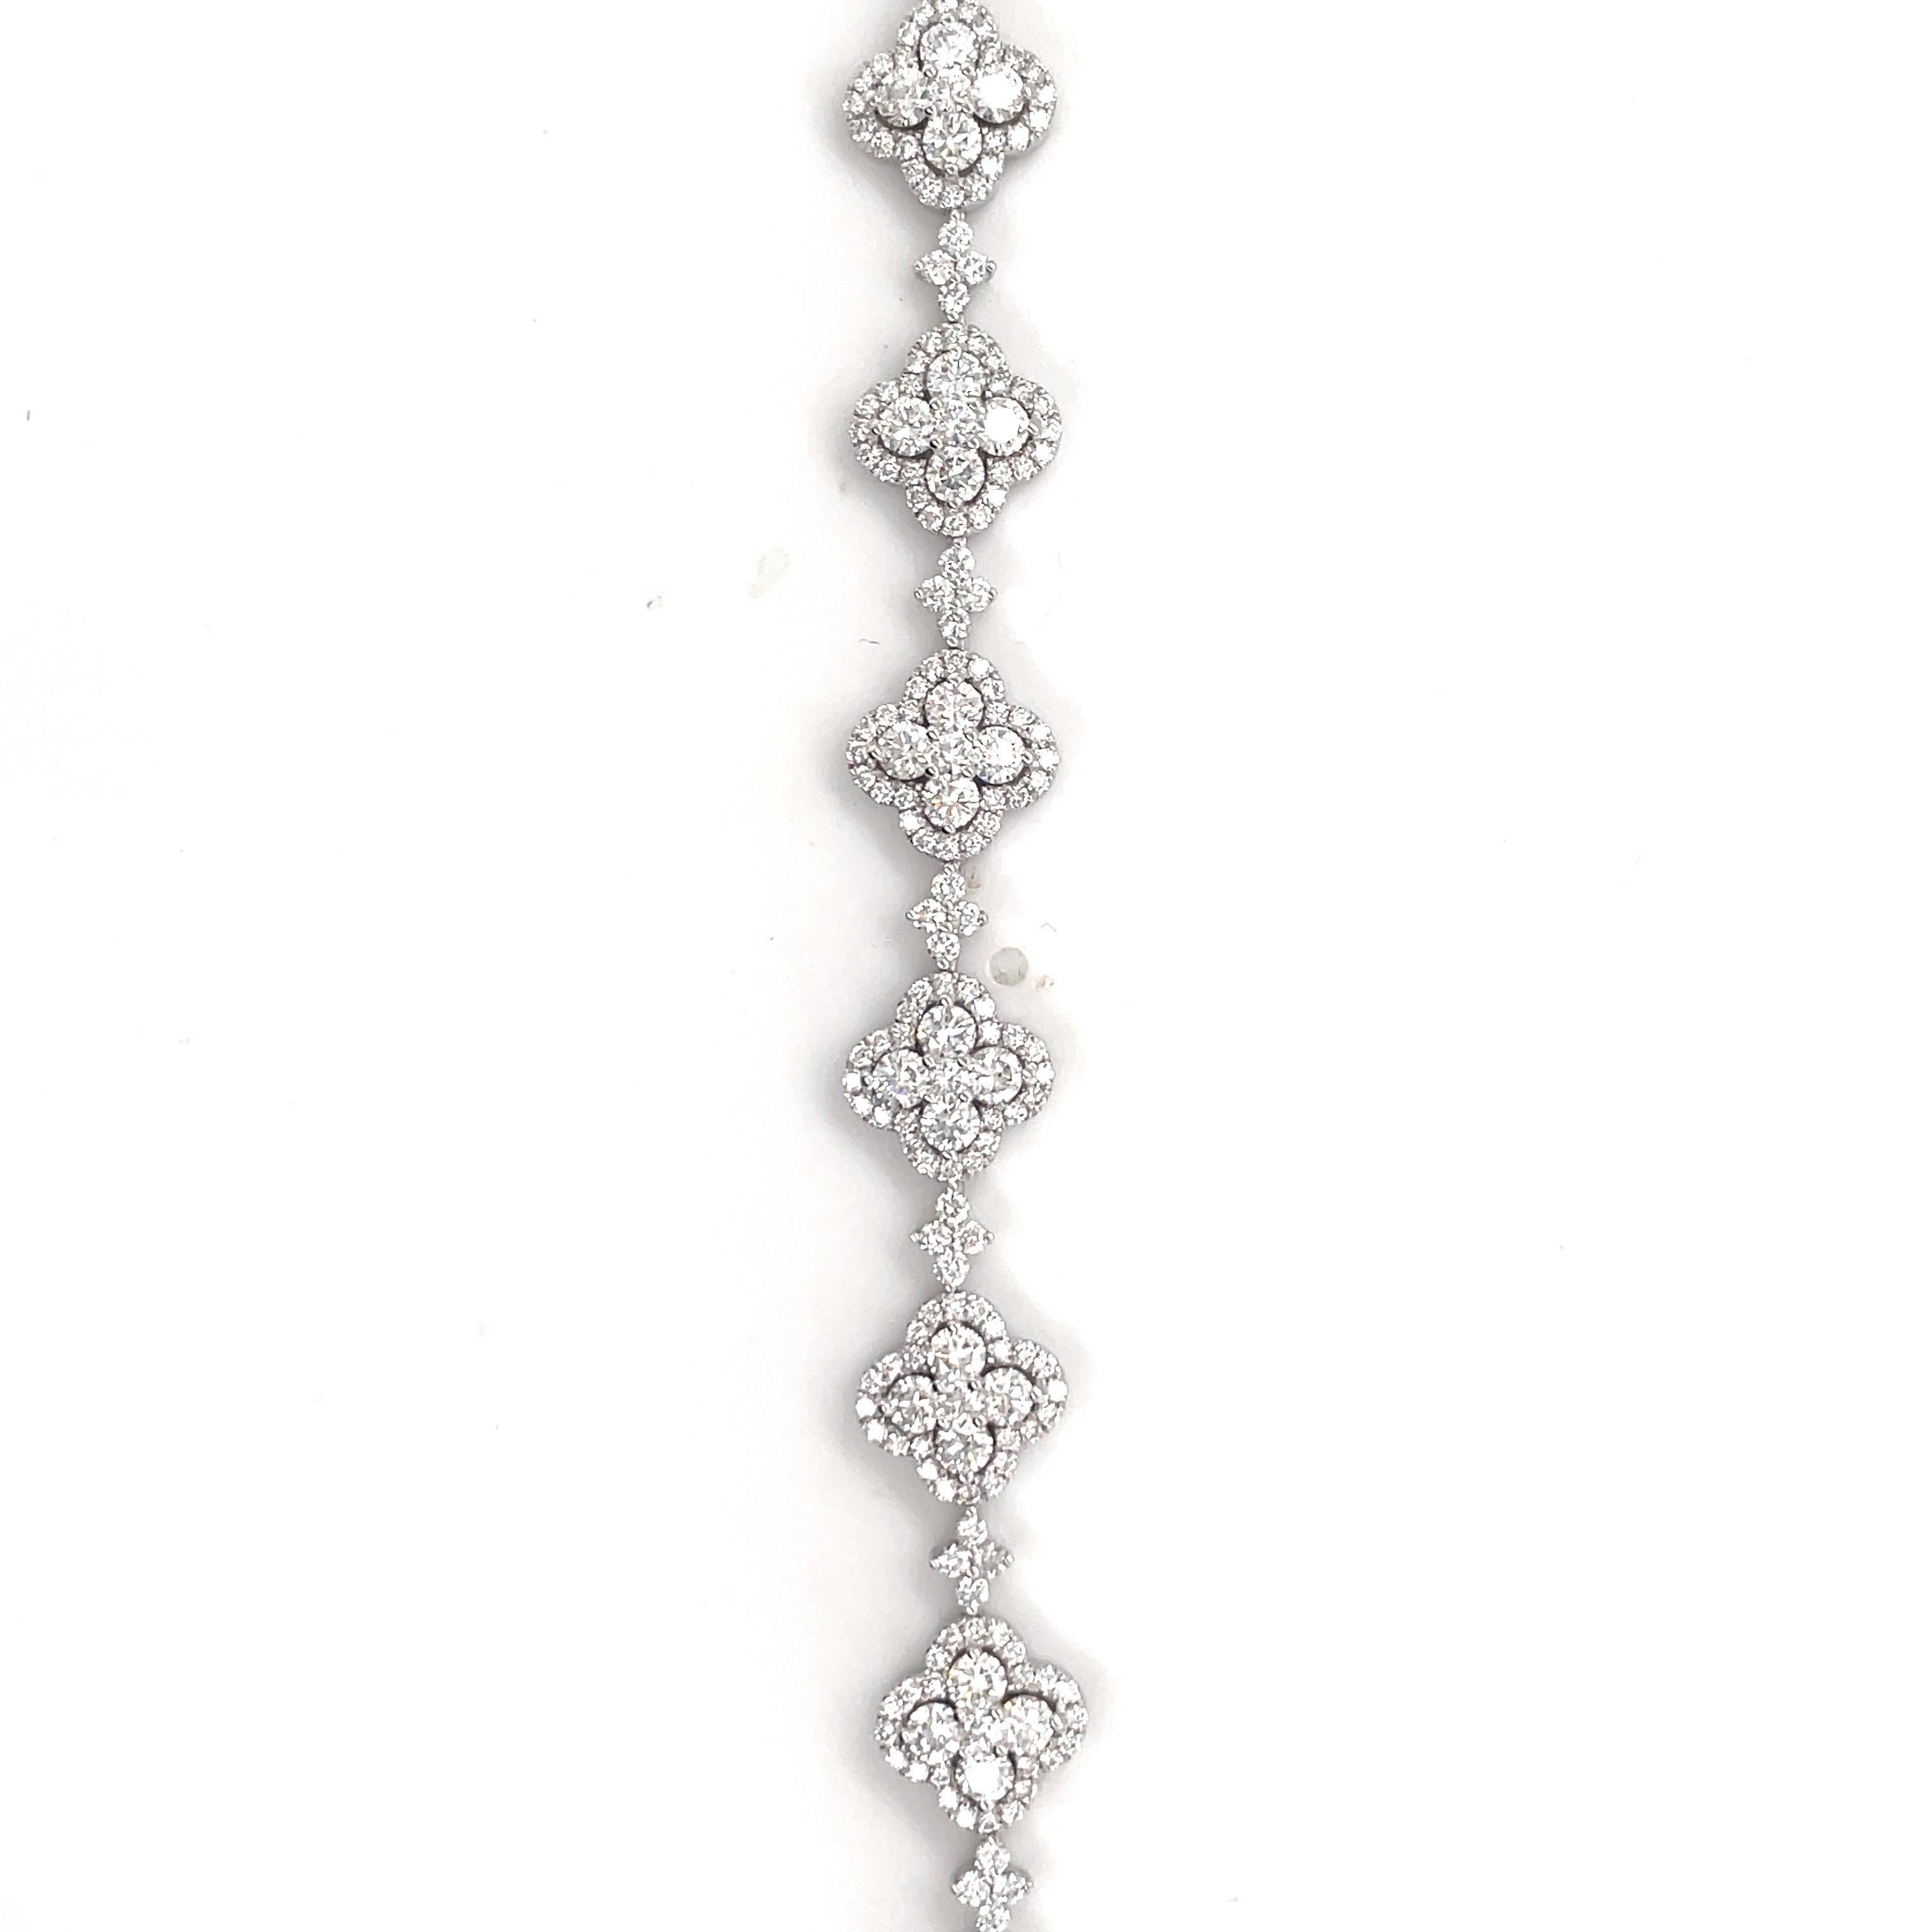 Contemporary 18 Karat White Gold Diamond Floral Tennis Bracelet 6.55 Carats 15 Grams For Sale